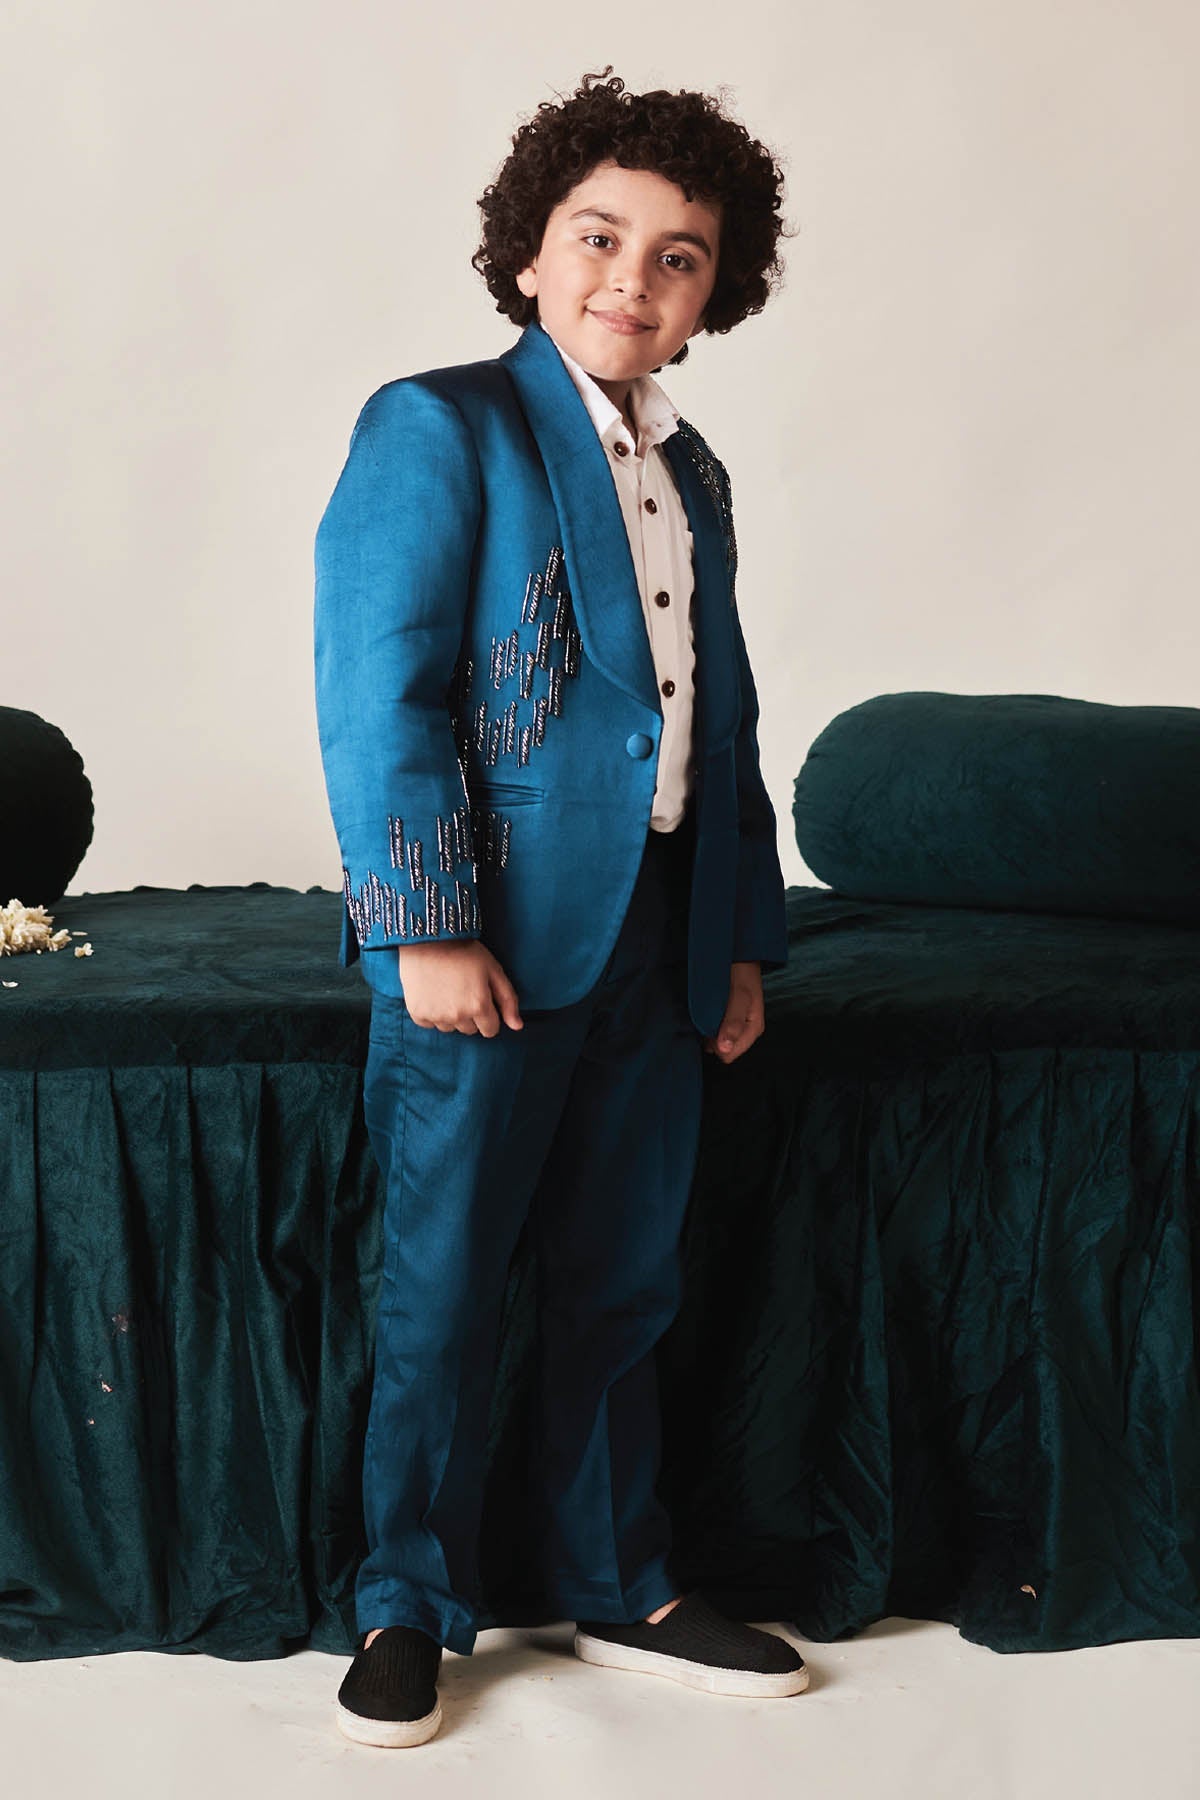 Designer Littleens Sapphire Blue Embroidered Tuxedo For Kids (Boys & Girls) Available online at ScrollnShops